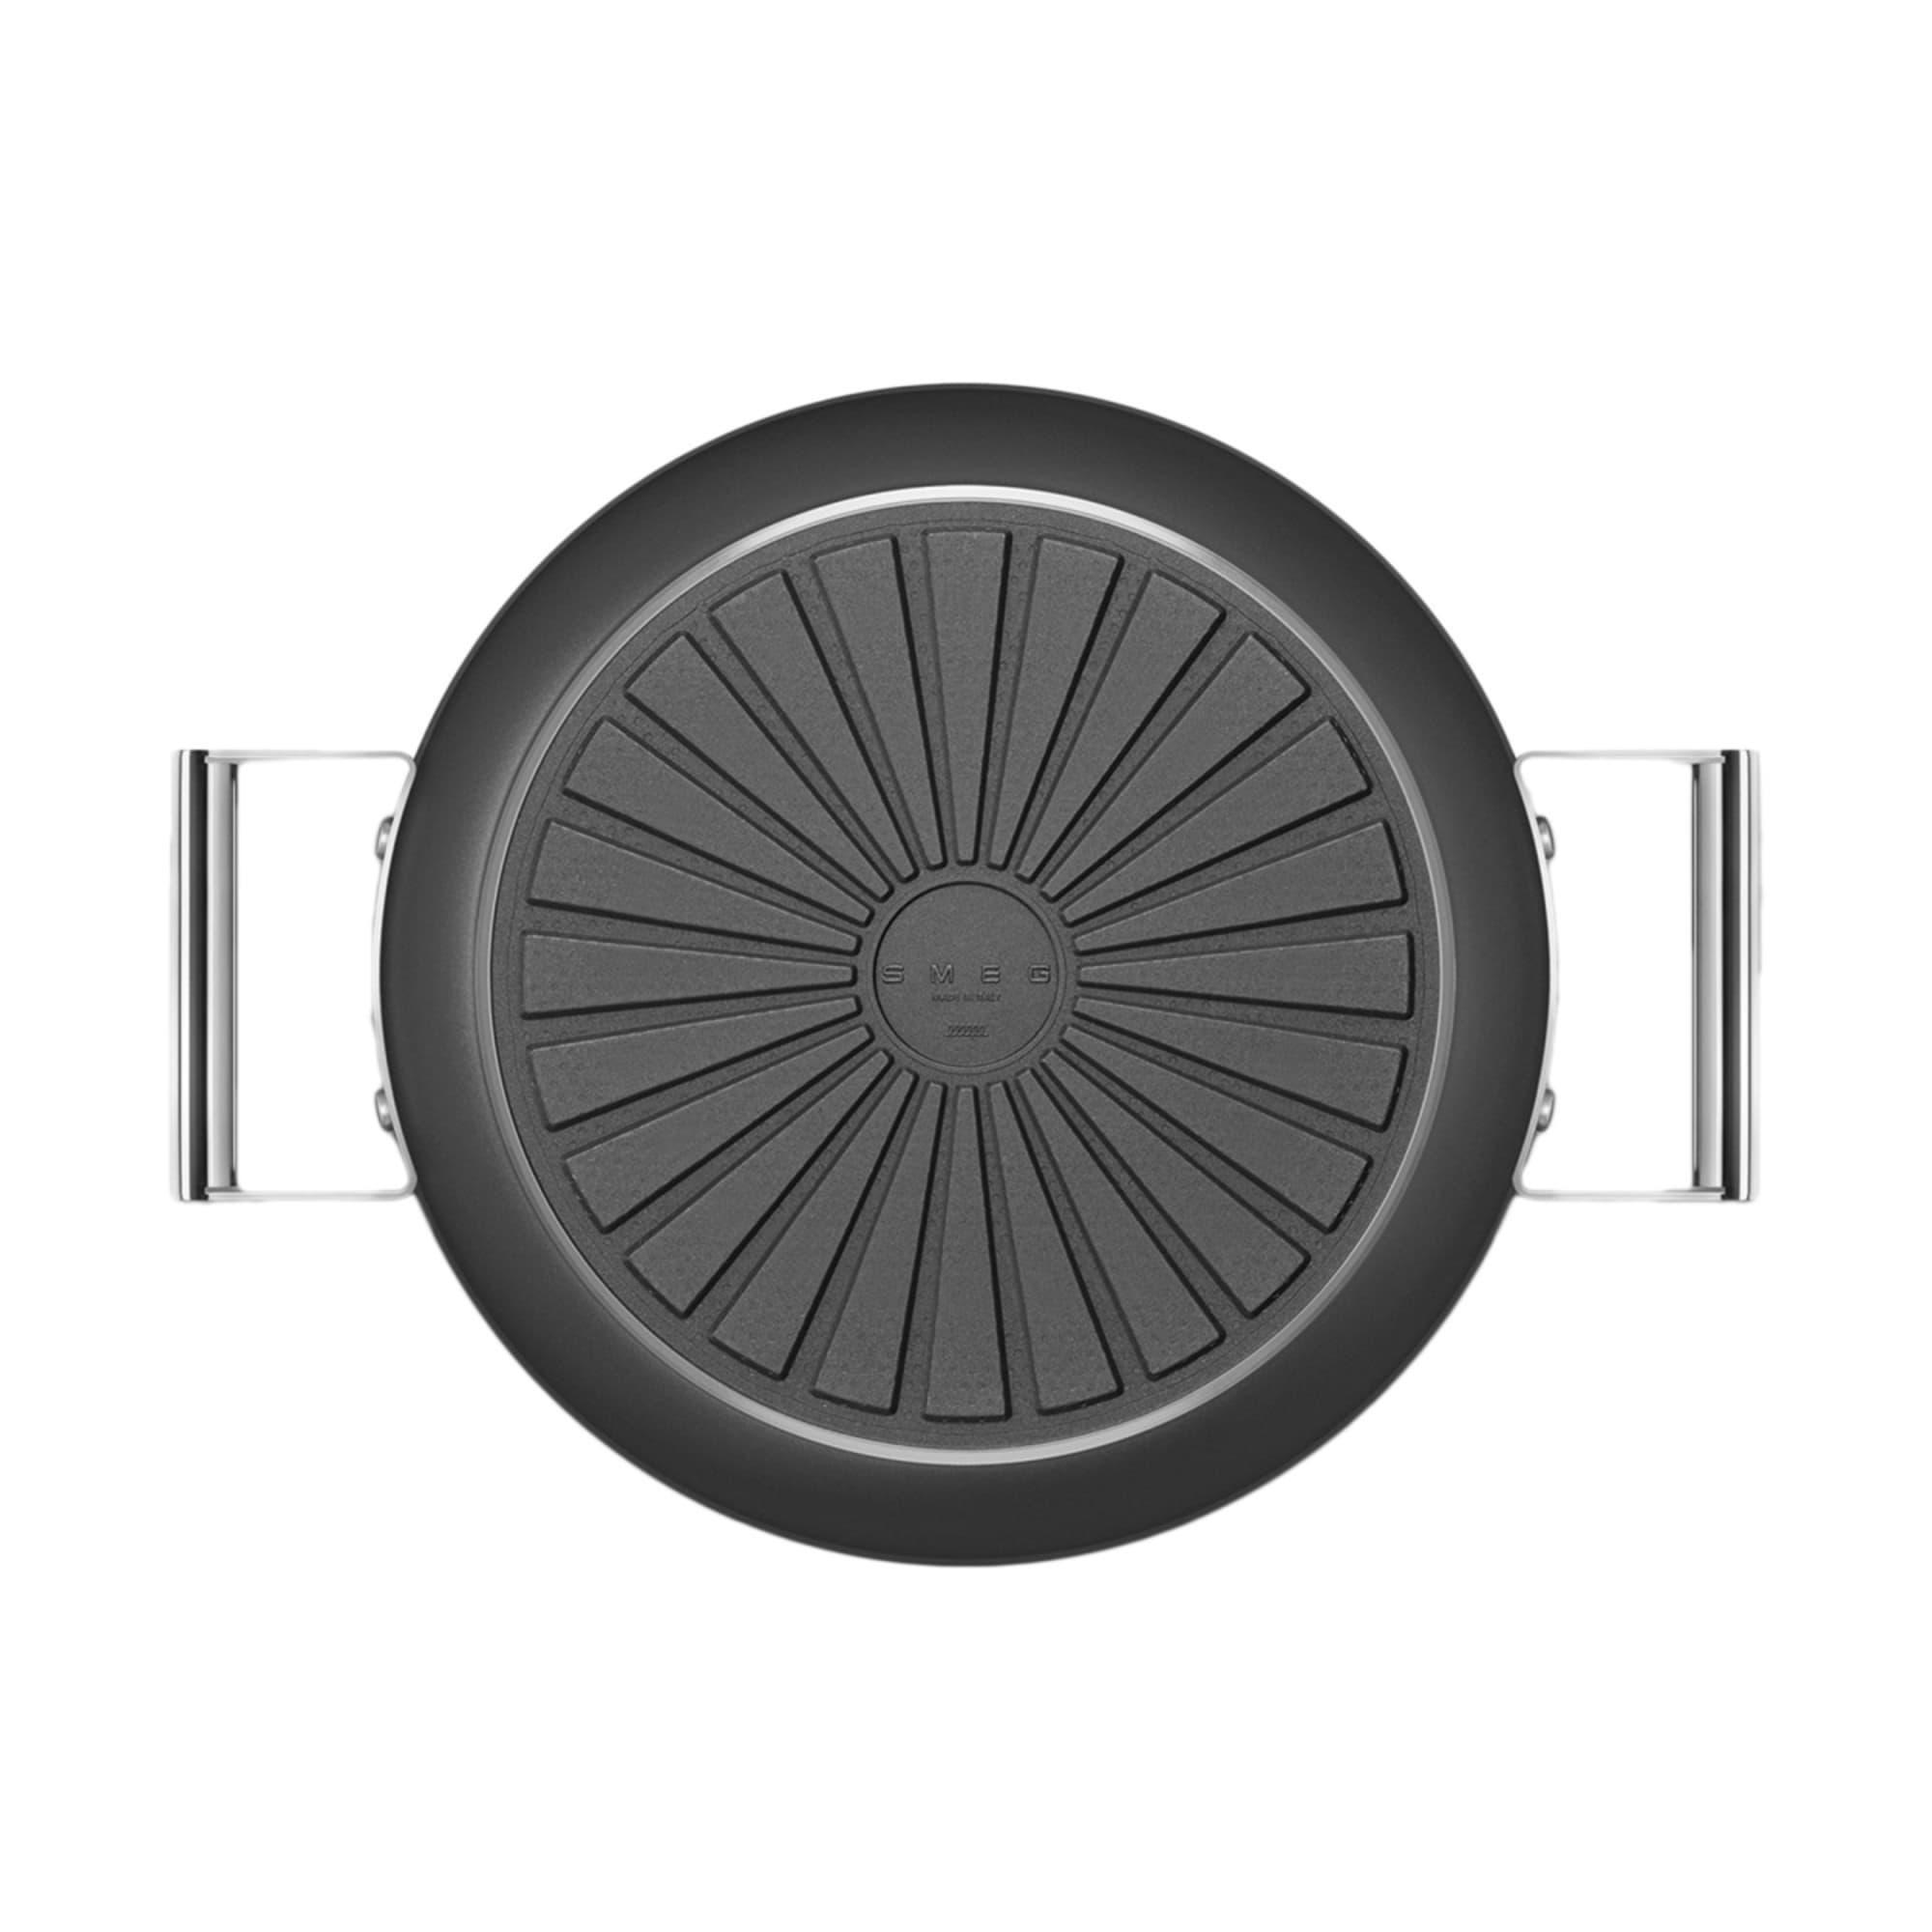 Smeg Non Stick Chef's Pan with Lid 28cm - 3.7L Black Image 13